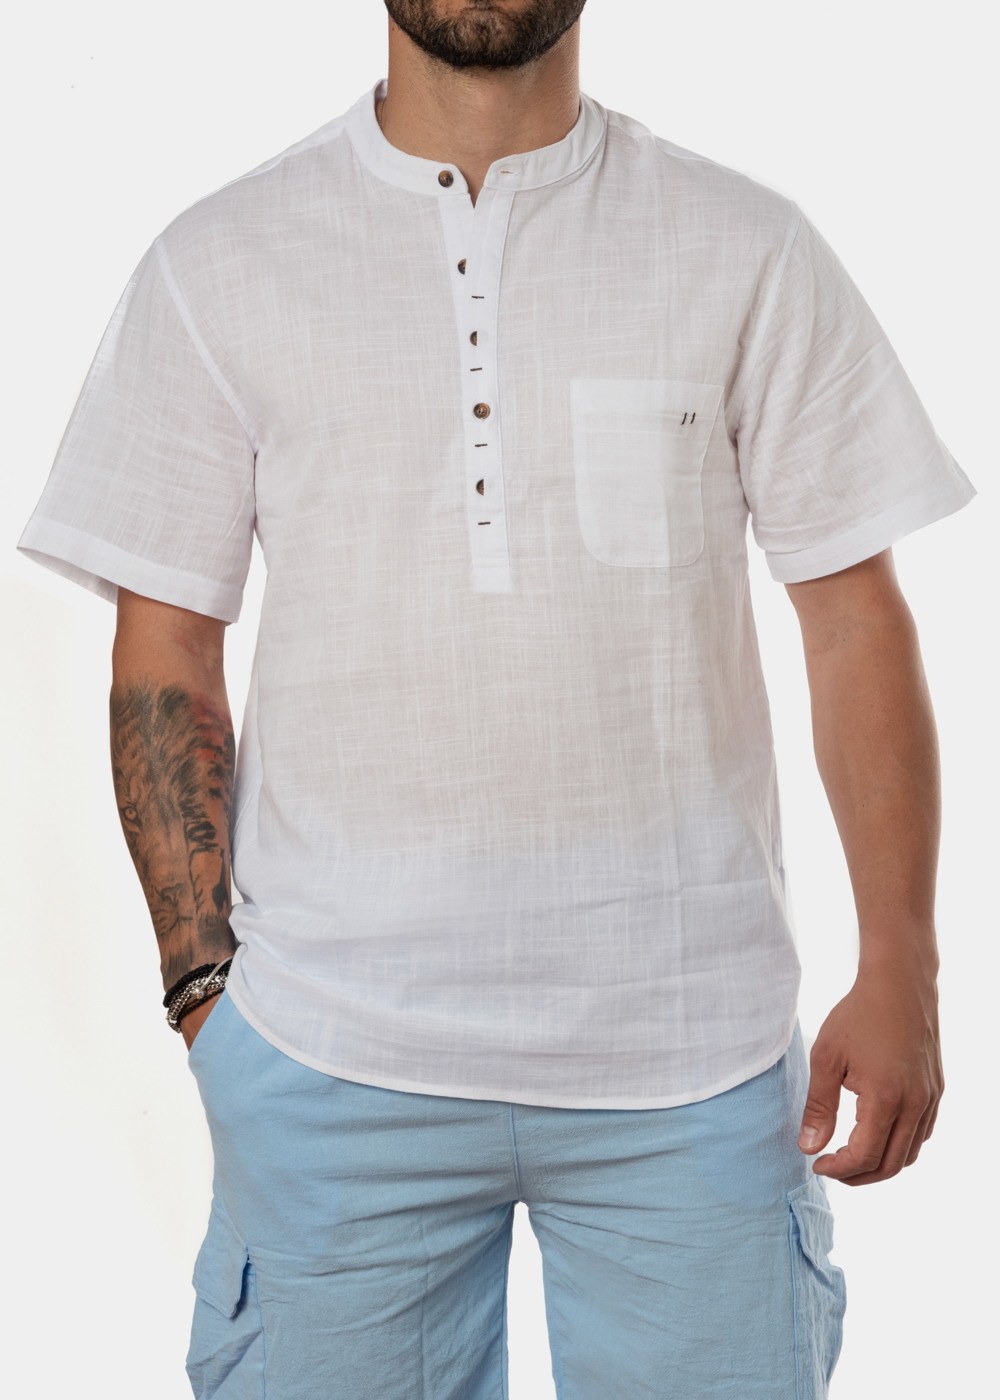 White mandarin shirt w/ short sleeve